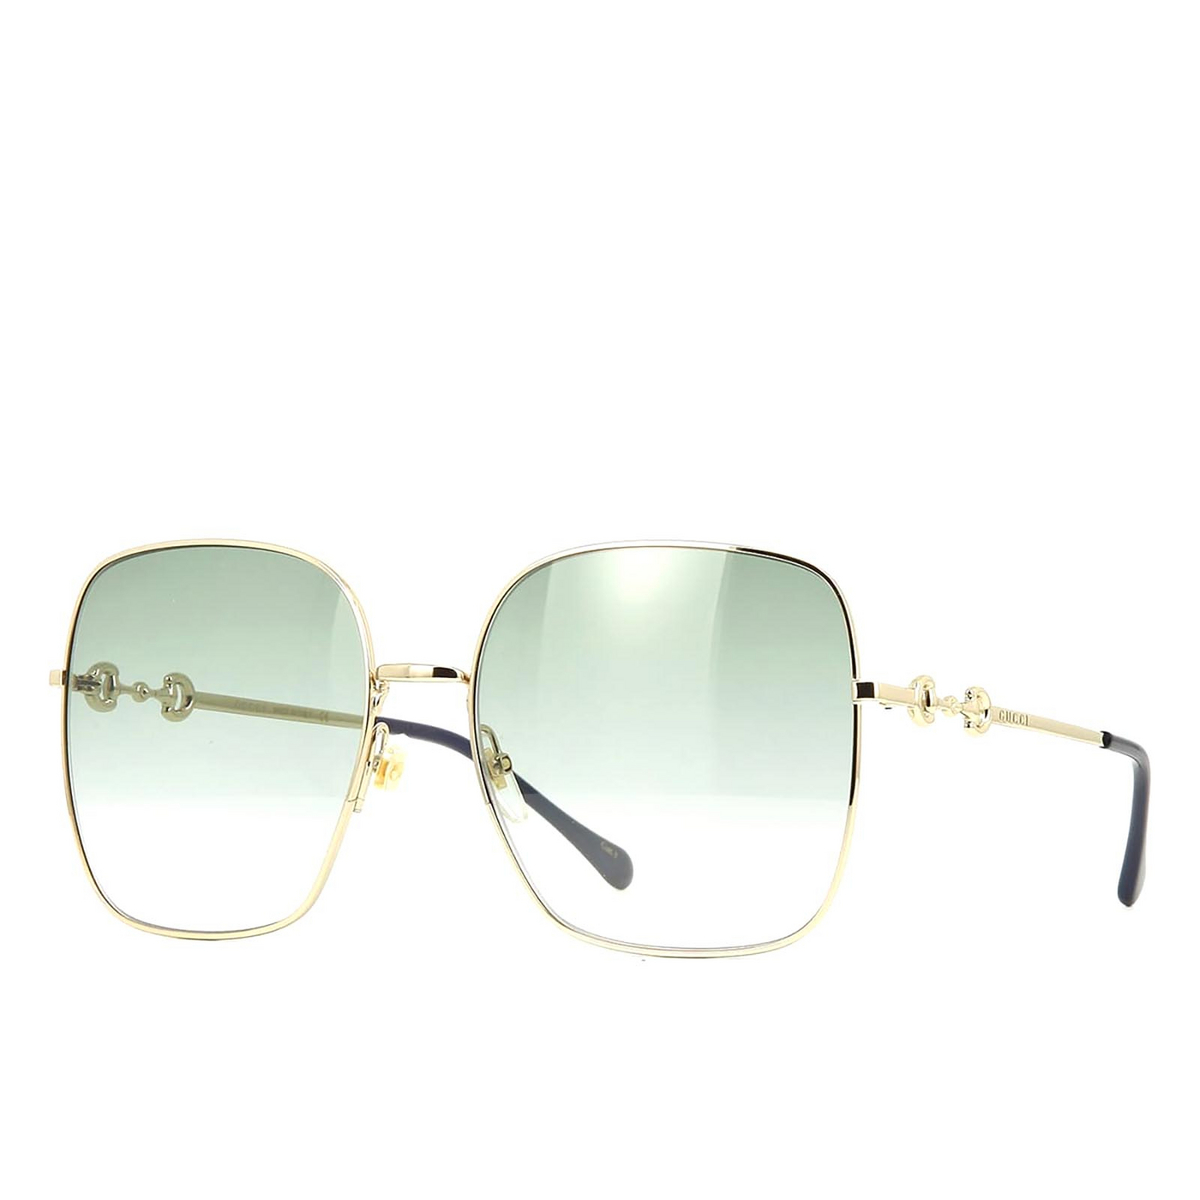 Gucci® Square Sunglasses: GG0879S color Gold 003 - three-quarters view.